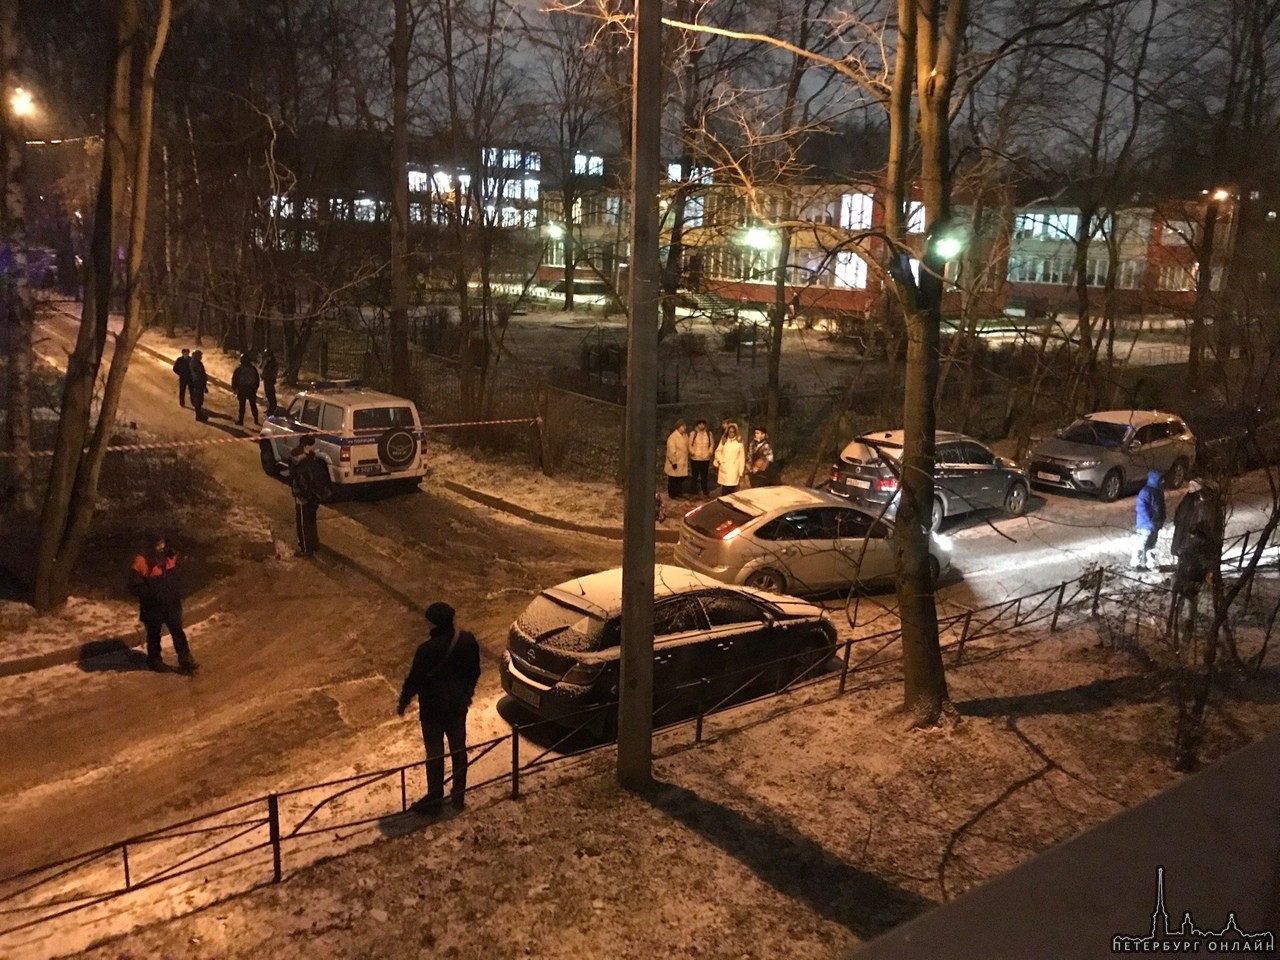 Закрыт проезд во дворах у дома 38/7 по улице Карпинского. Всё оцепили, говорят угроза взрыва.